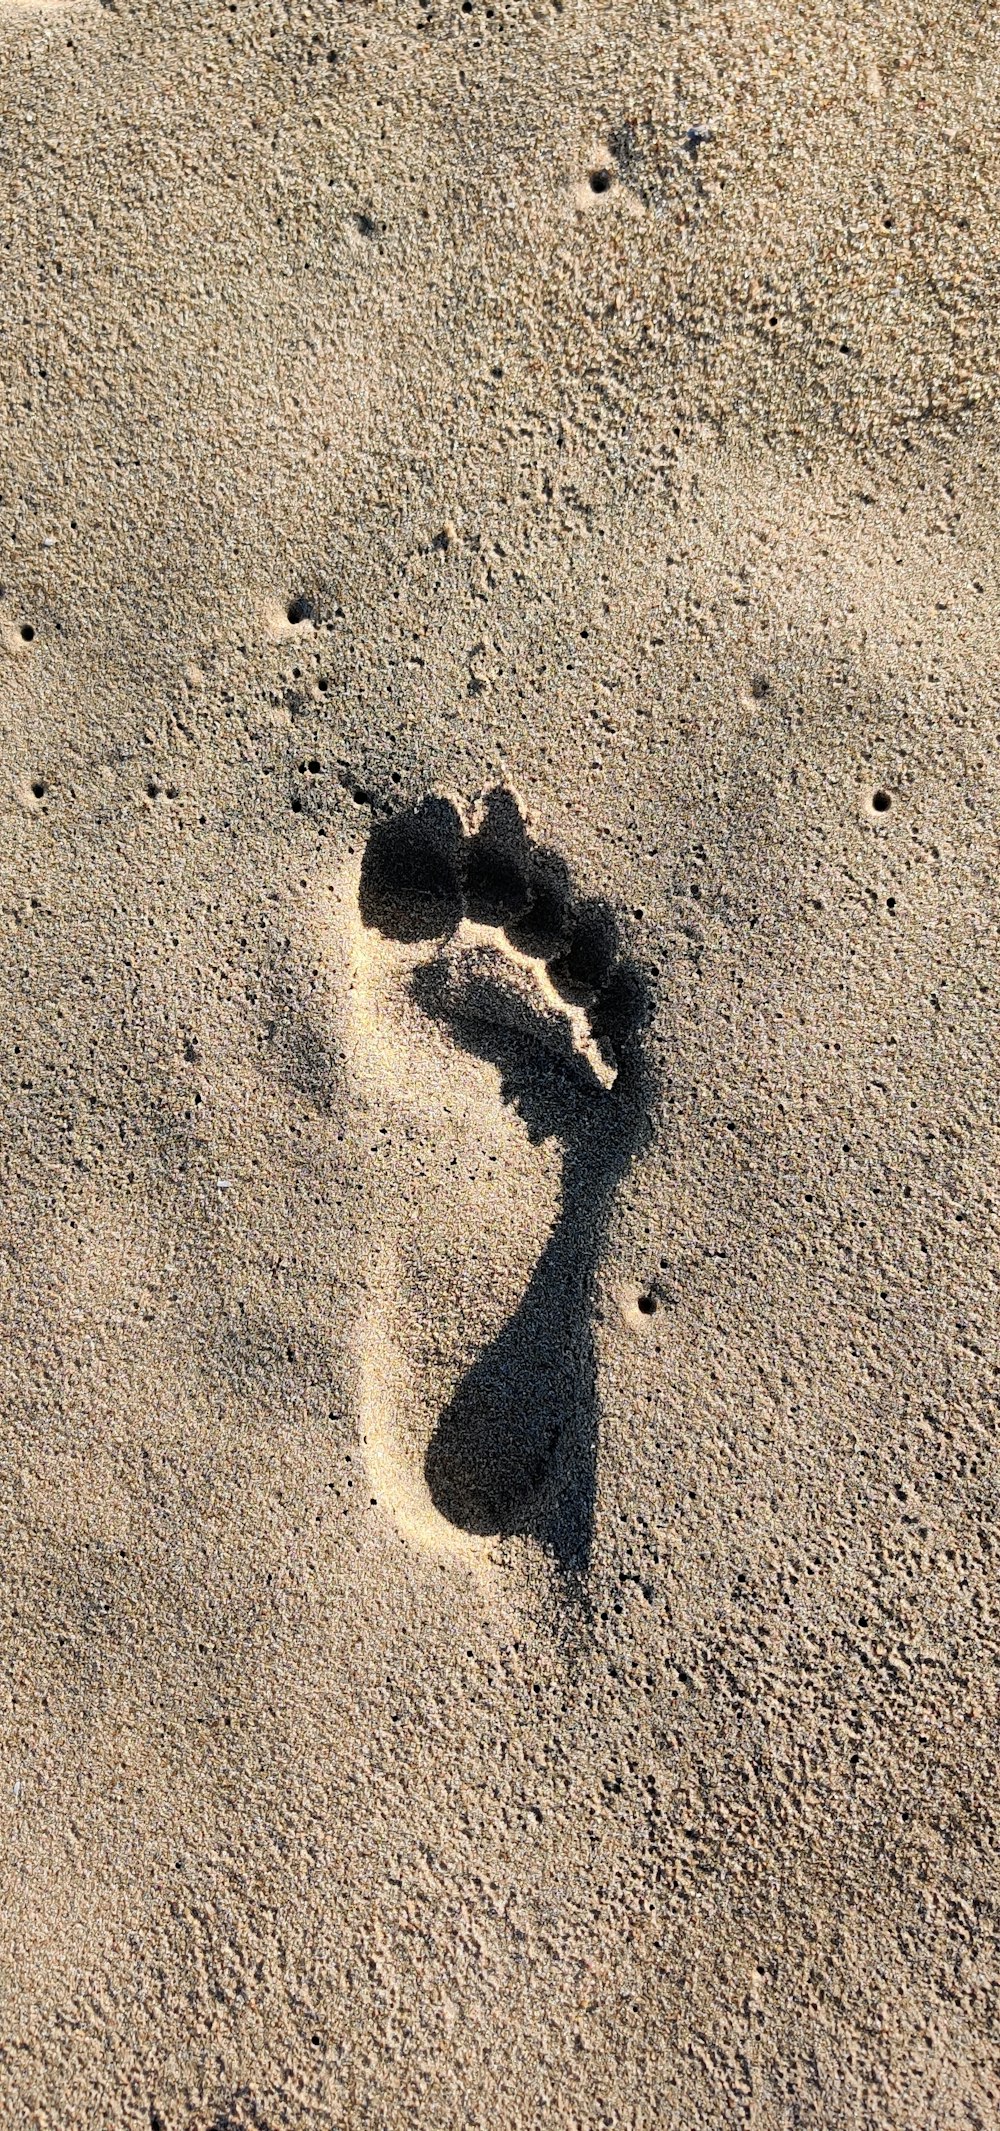 Sombra de 2 personas en arena marrón durante el día